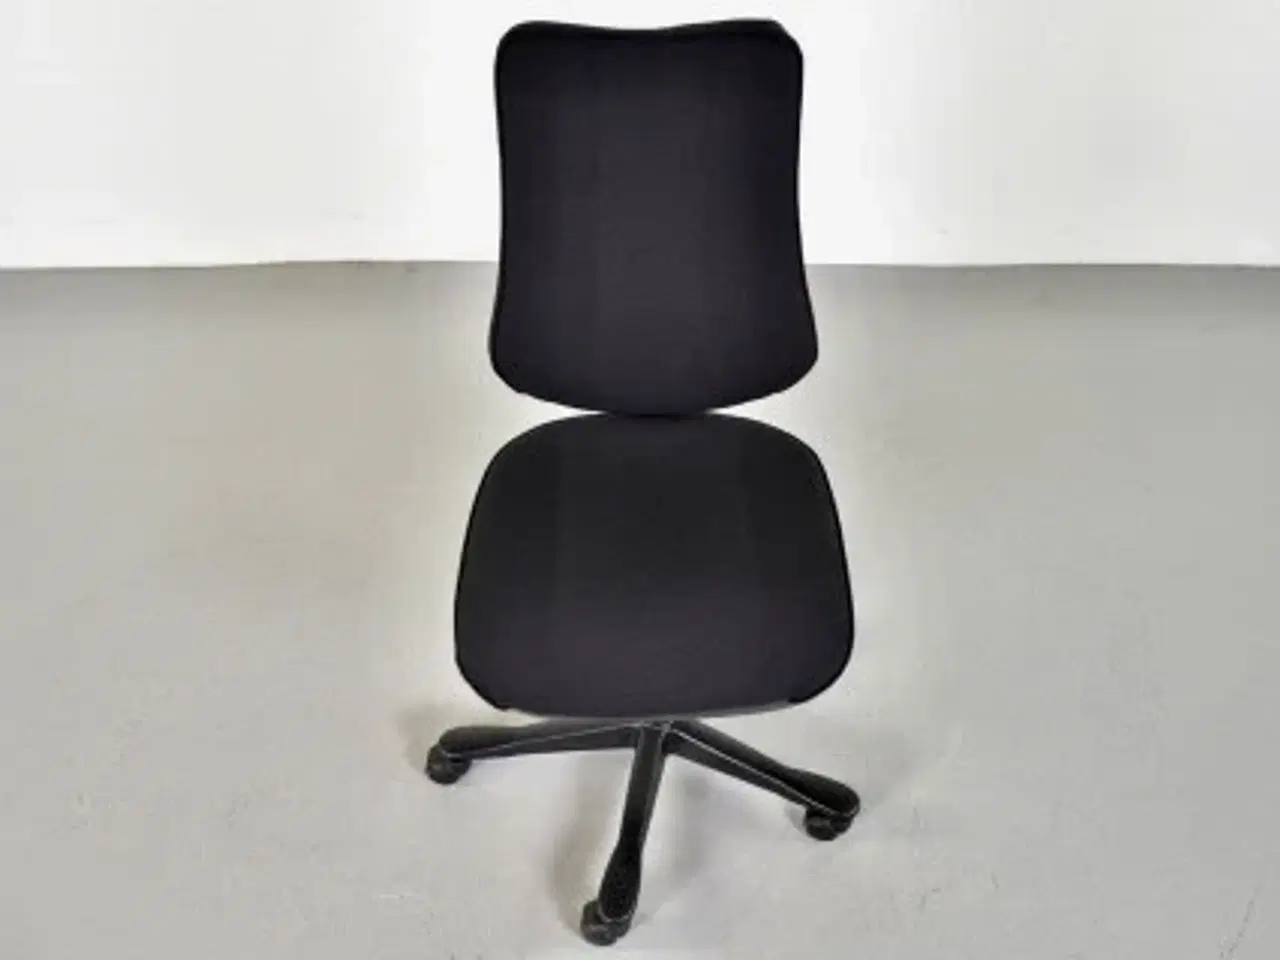 Billede 5 - Rbm model 800 kontorstol med høj ryg og nyt sort polster